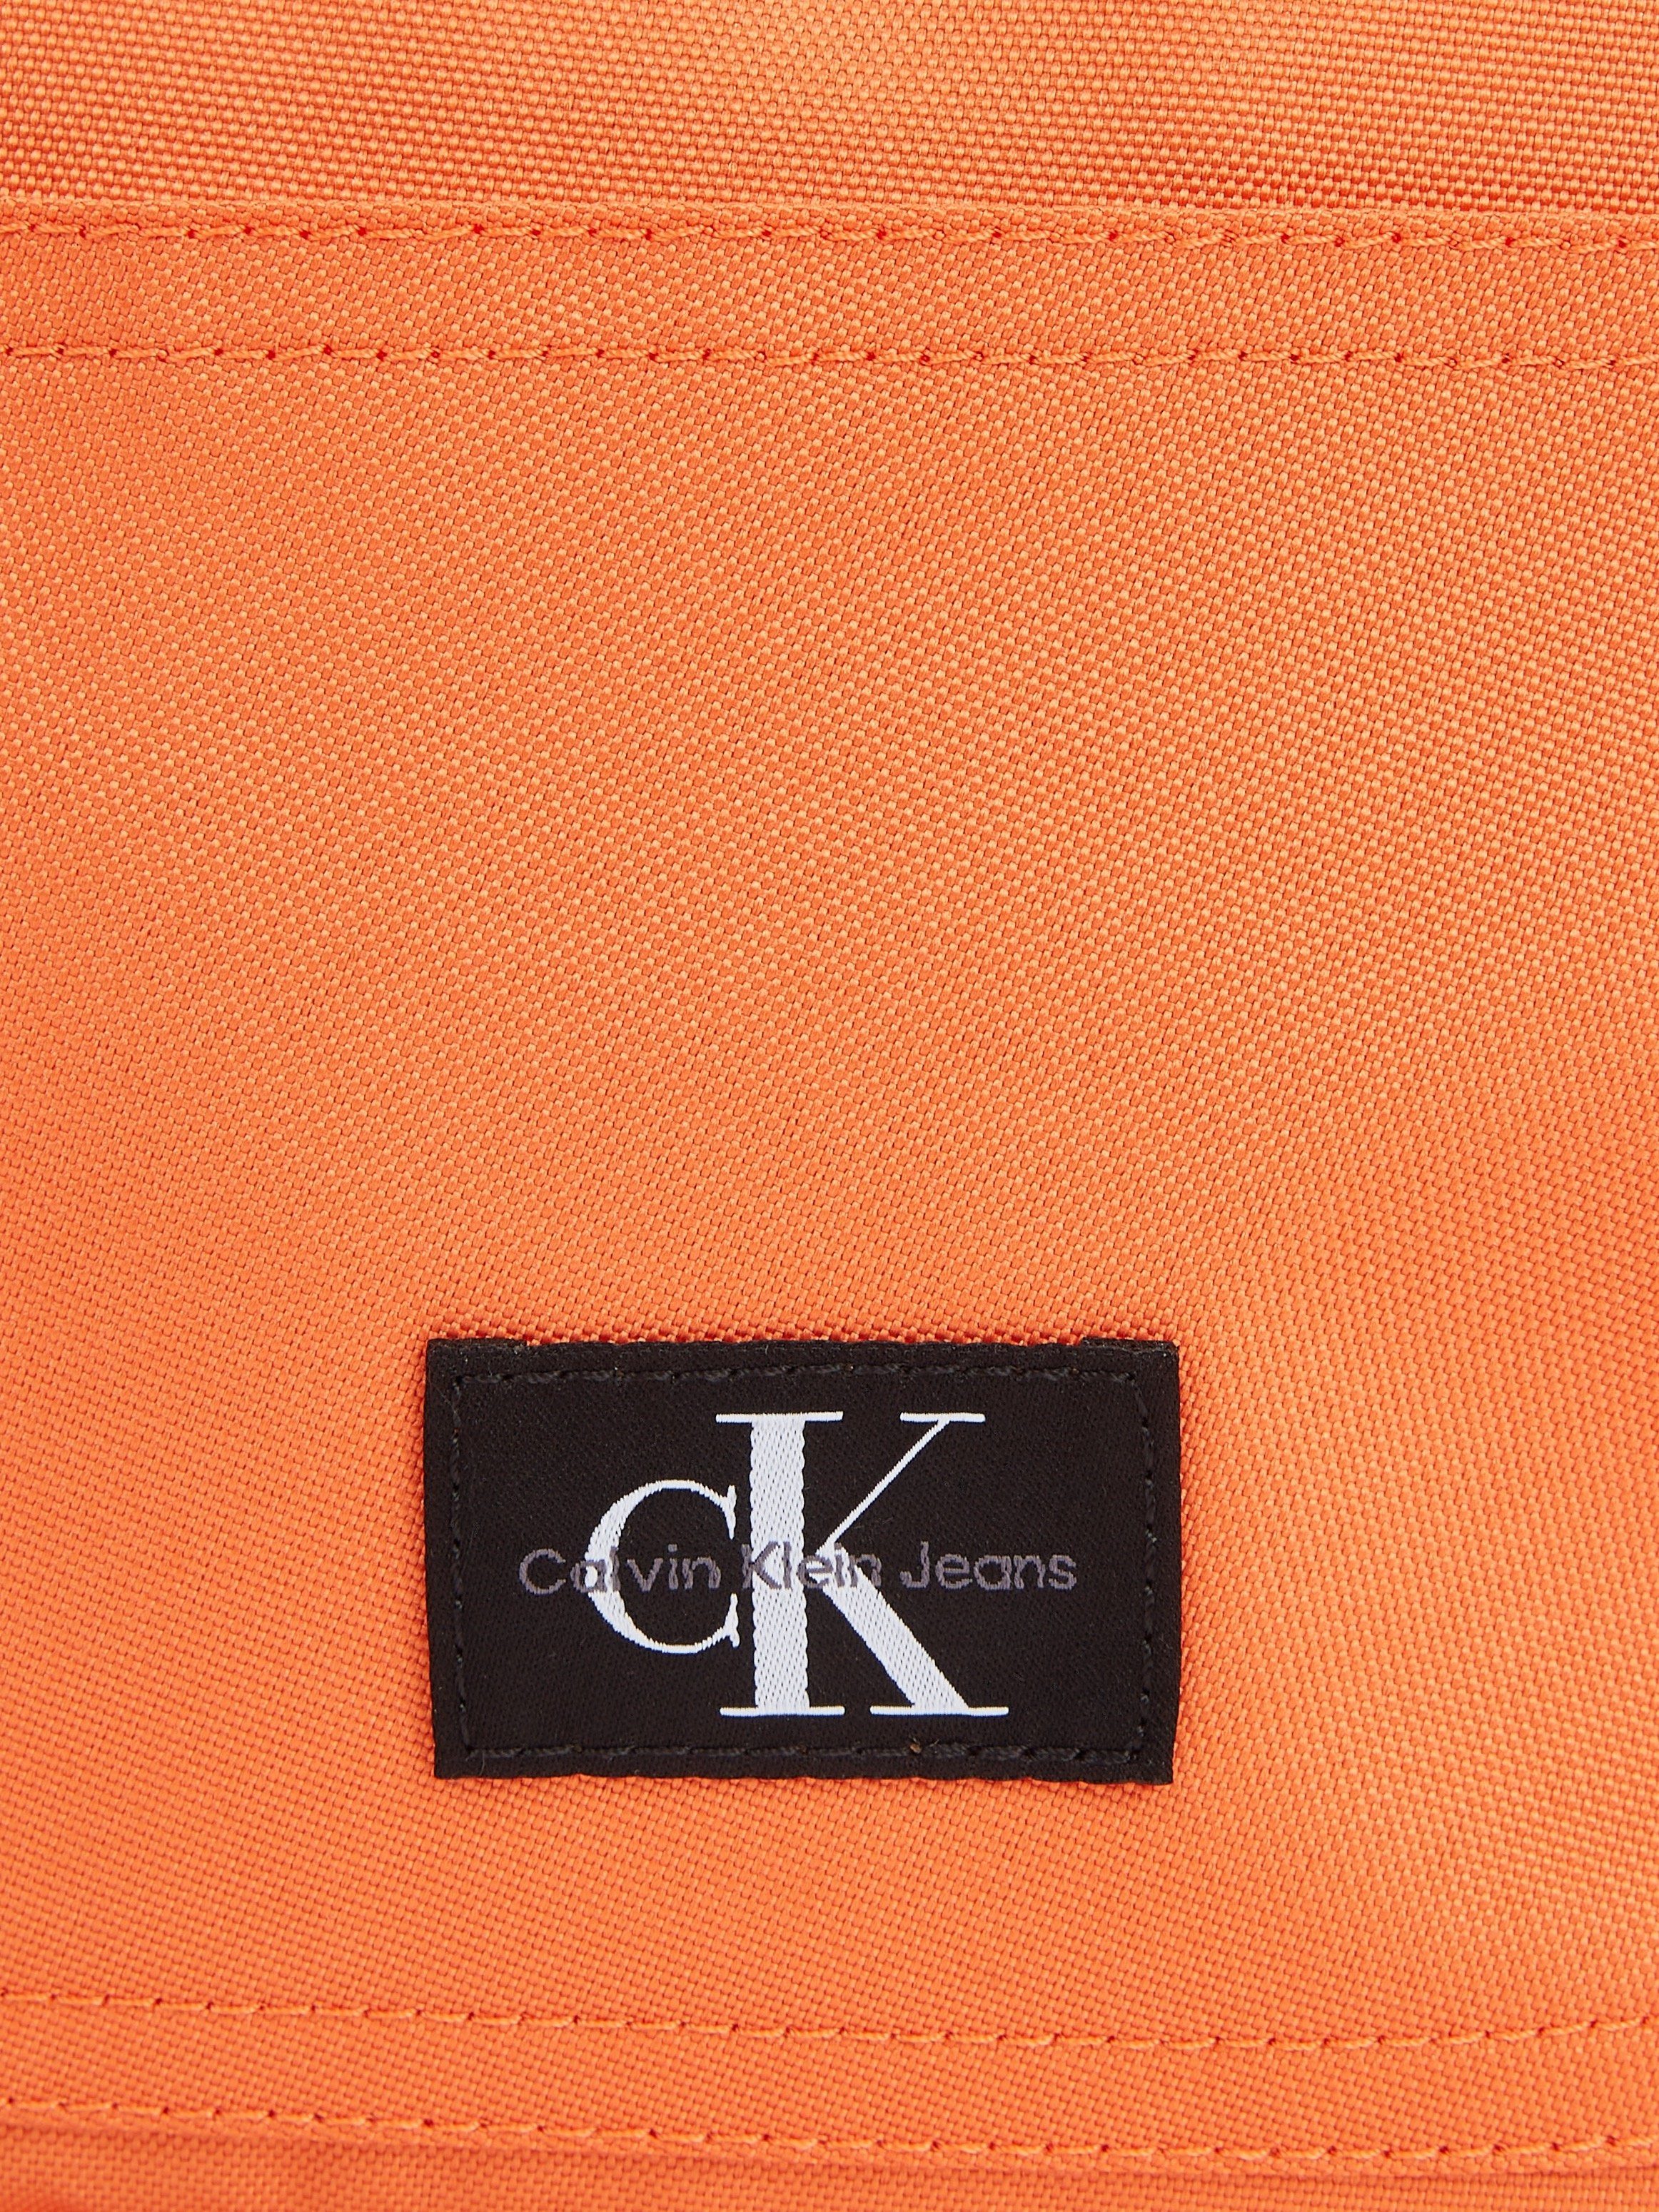 Calvin Klein BP40 dezentem CAMPUS ESSENTIALS koralle Jeans SPORT Cityrucksack Design W, in